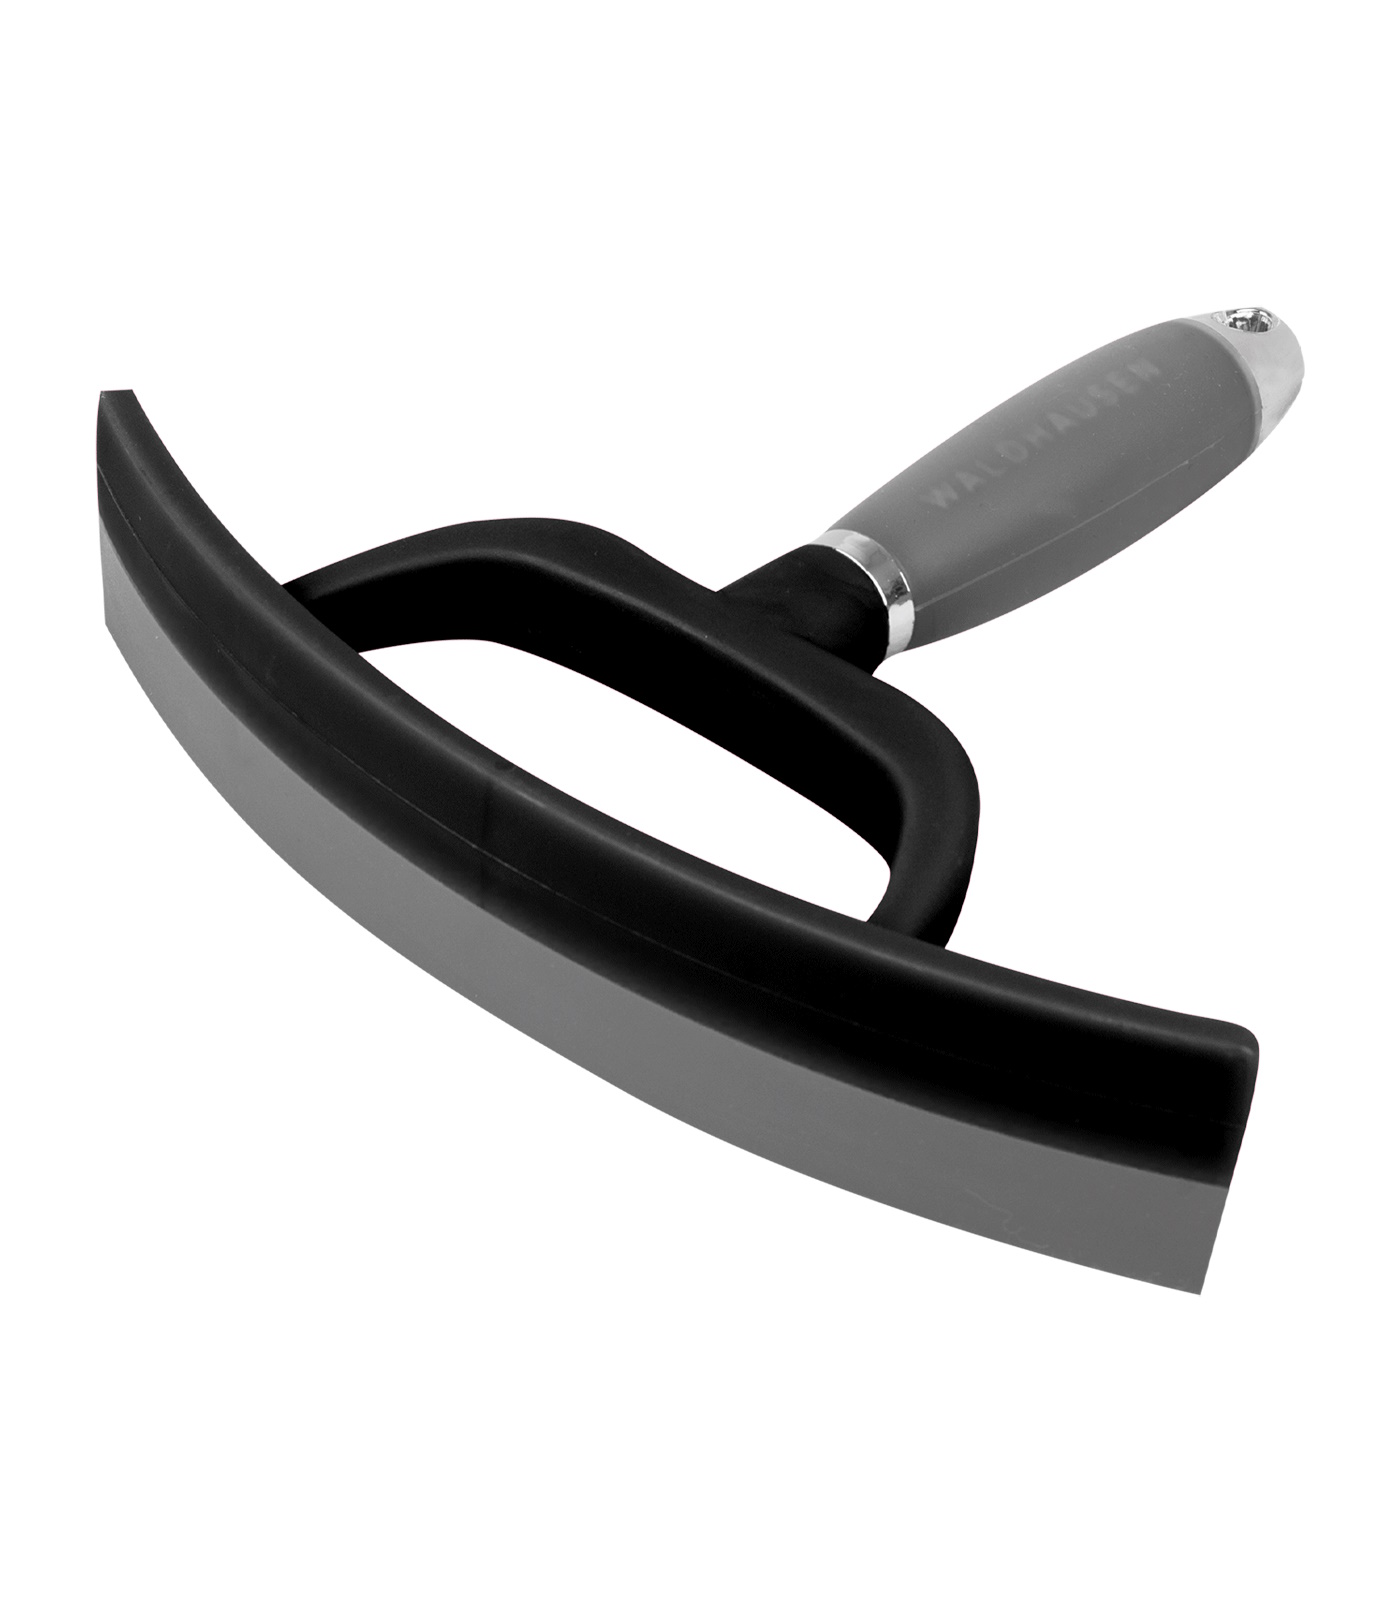 WALDHAUSEN Schweißmesser mit ergonomischen Gelgriff - schwarz/roségold - Stück - 1